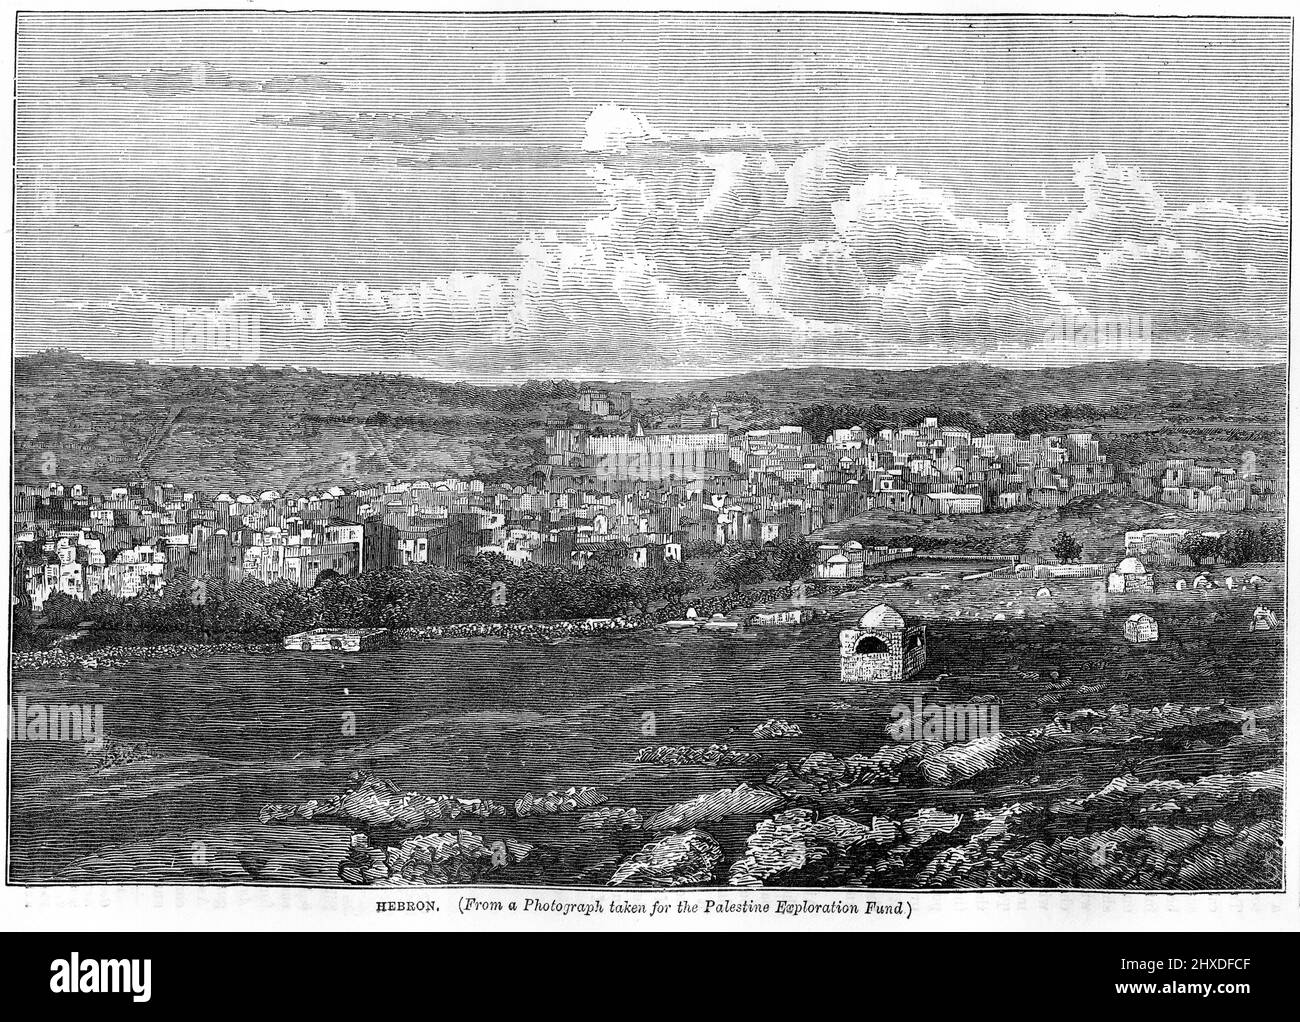 Incisione della città di Hebron, circa 1880 Foto Stock